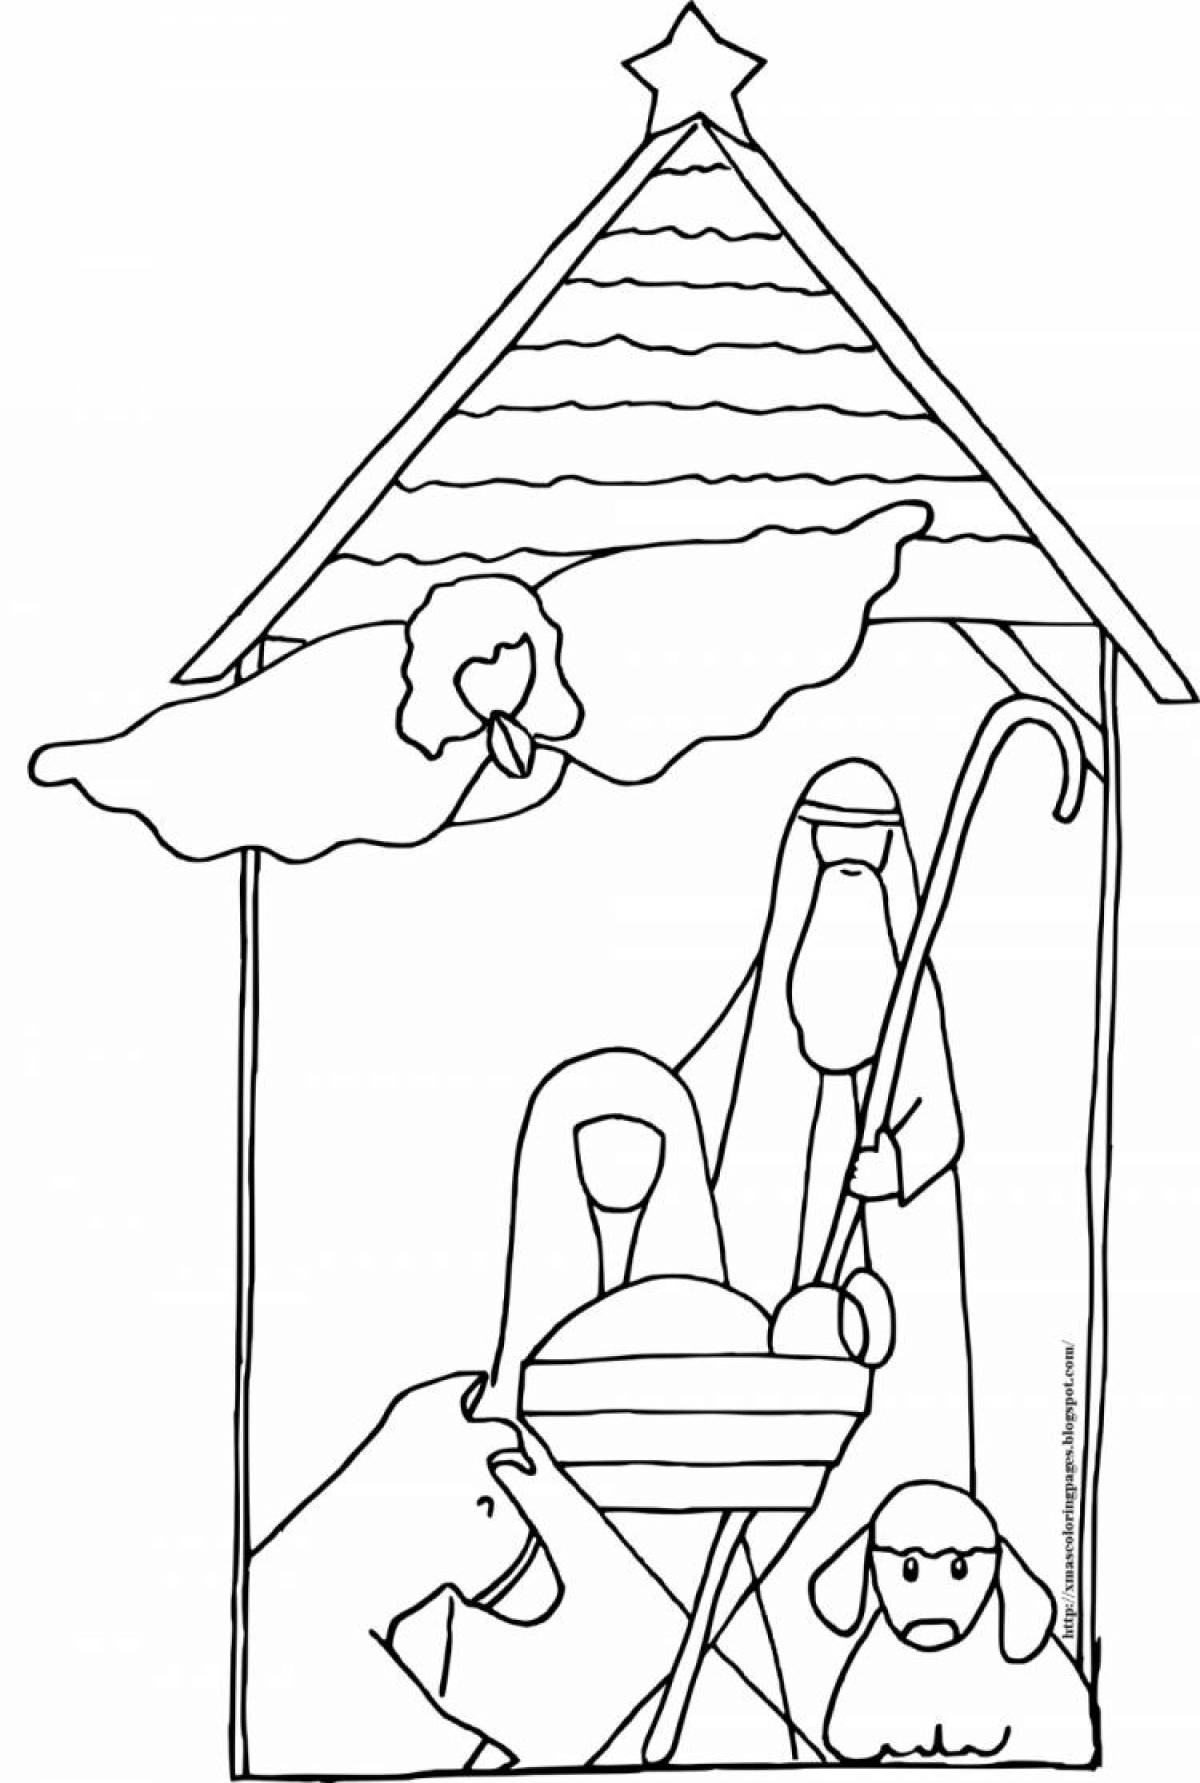 Amazing nativity scene coloring book